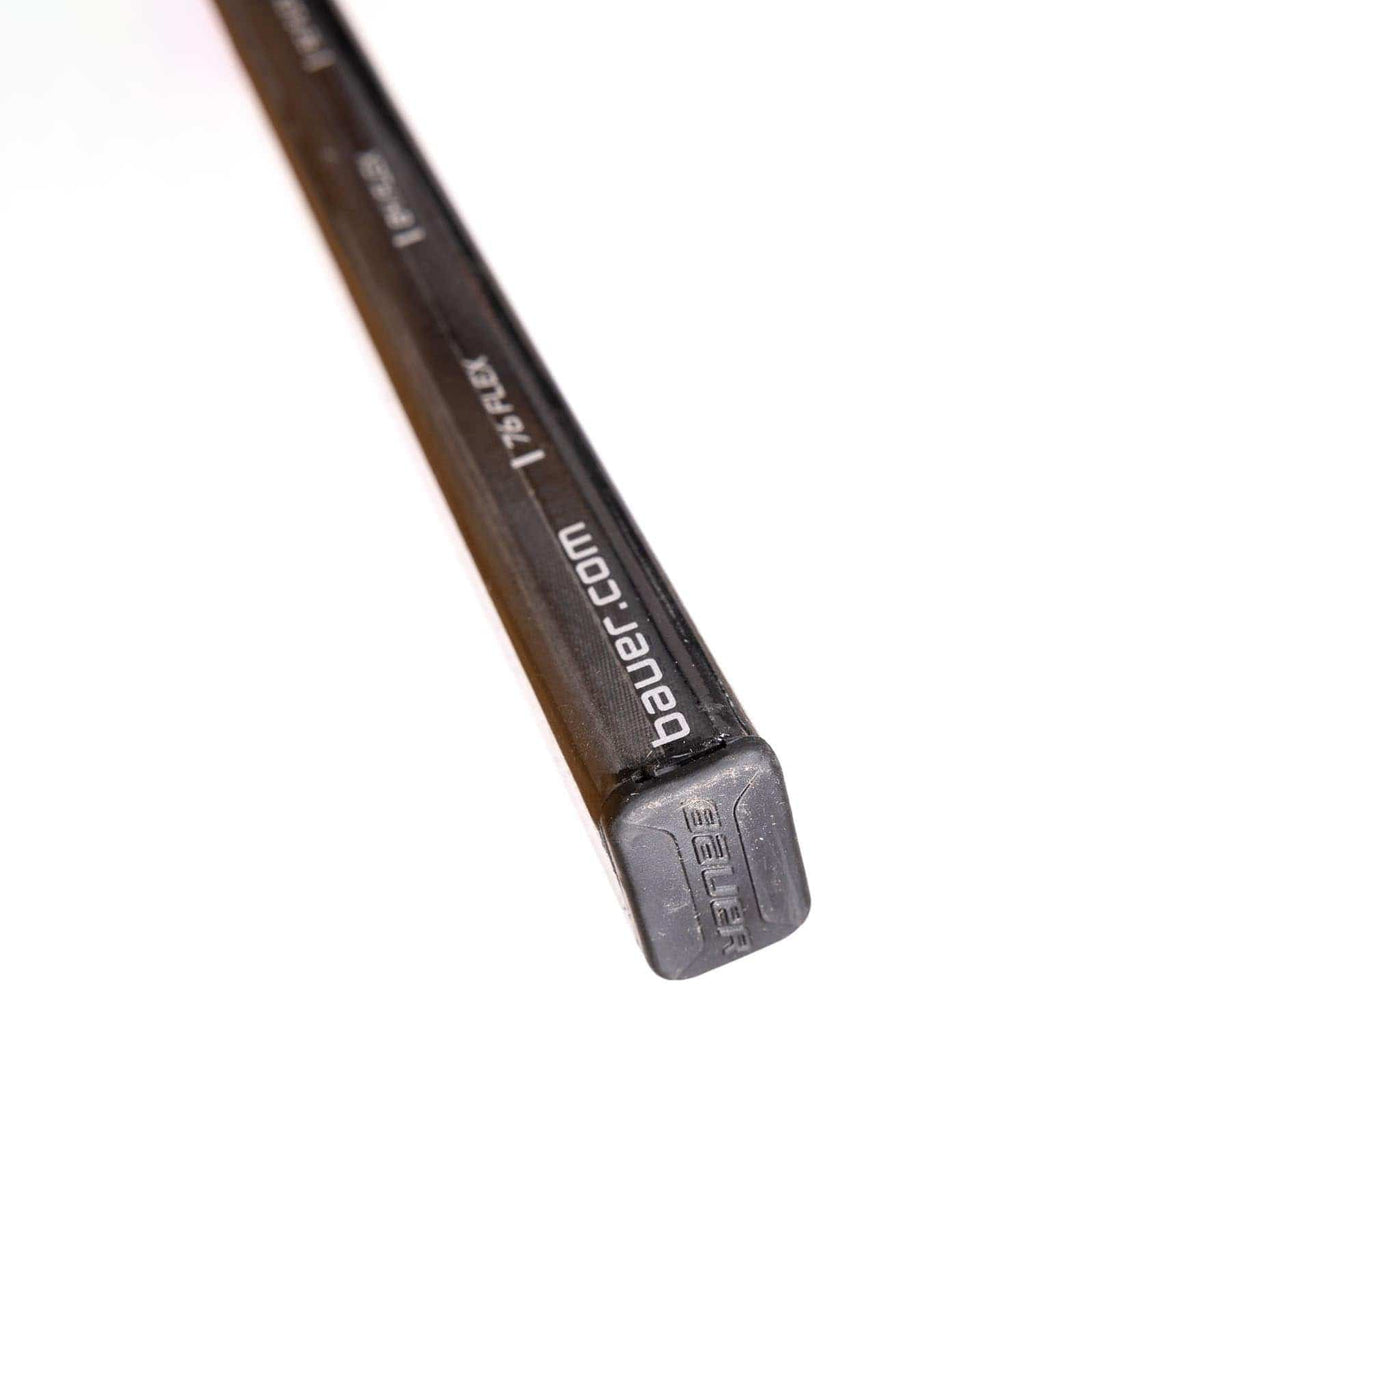 Bauer Vapor 3X Grip Senior Hockey Stick – Proshop